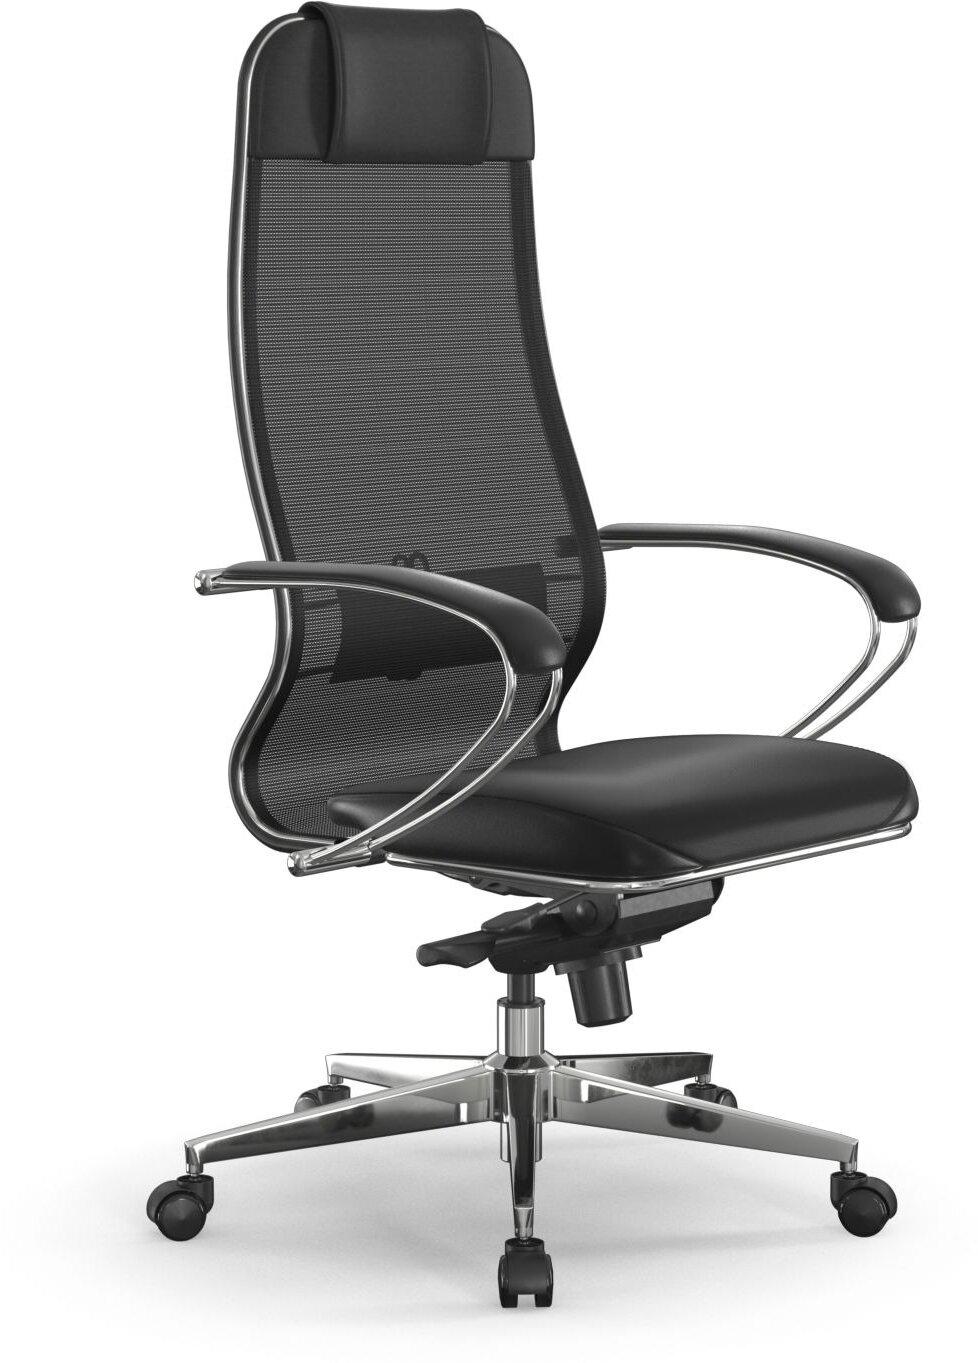 Компьютерное кресло METTA Samurai Comfort S Infinity Easy Clean офисное